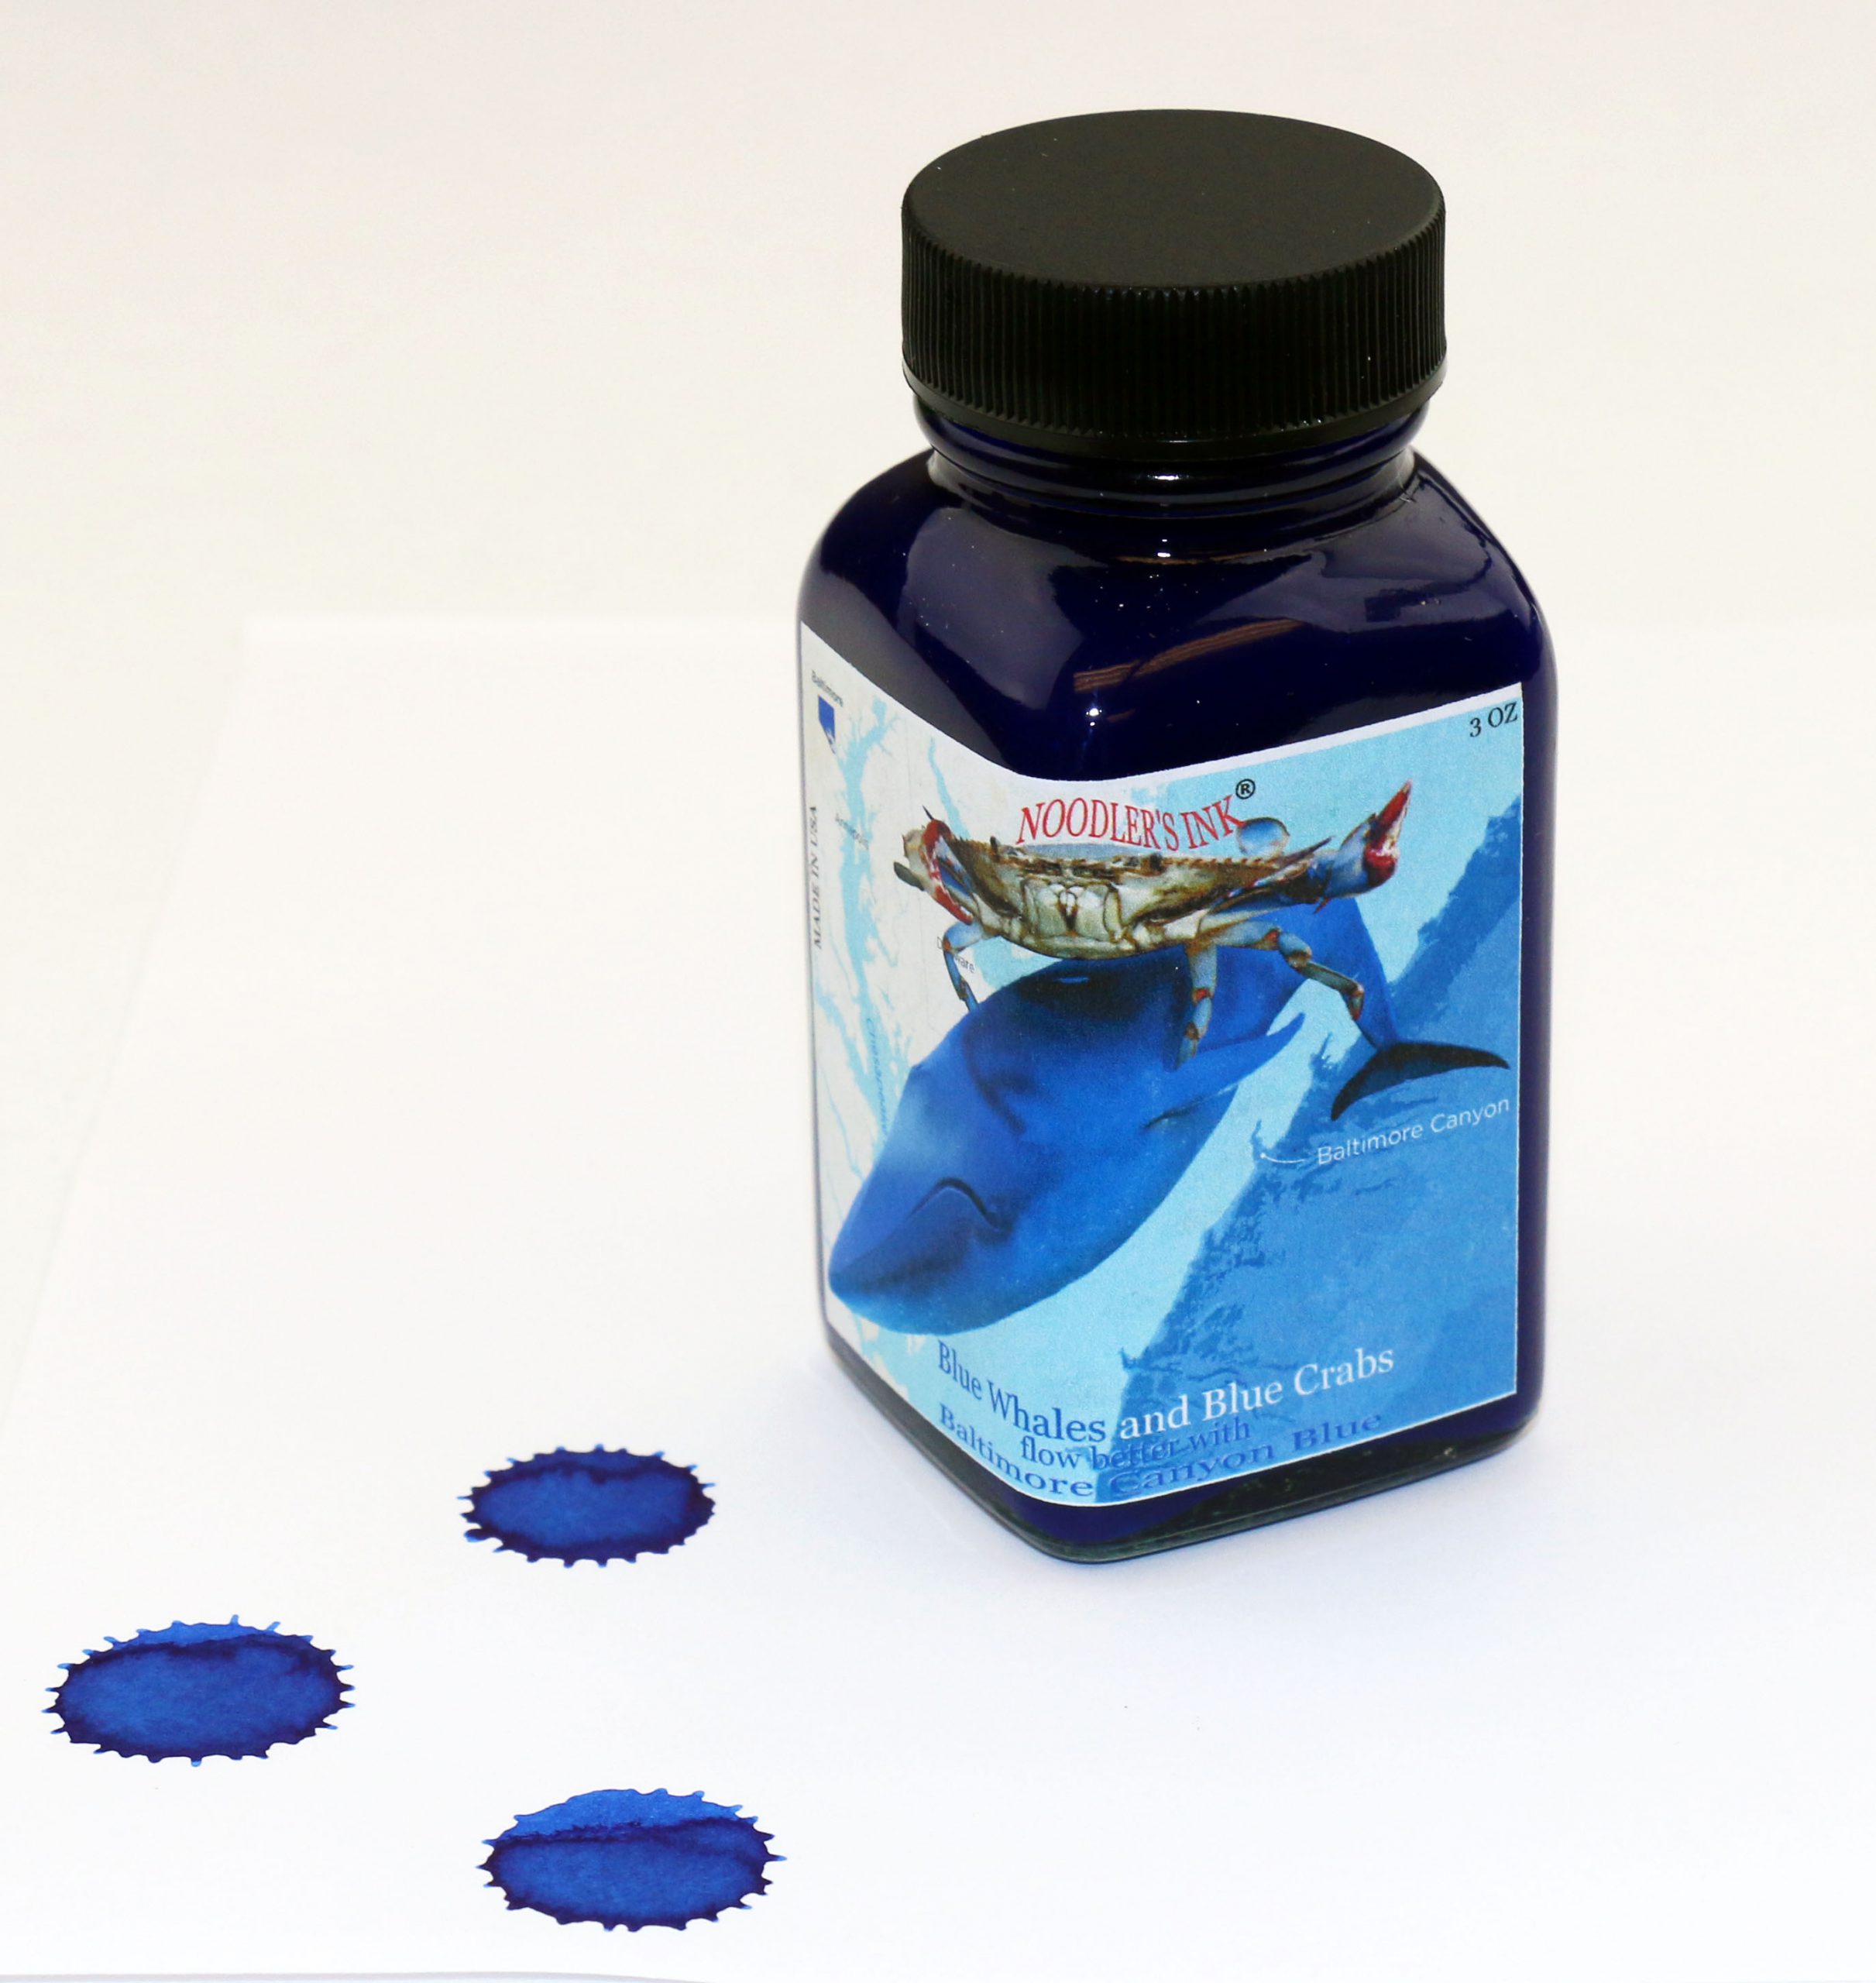 Noodler's X-Feather Blue Ink - 3 oz Bottle